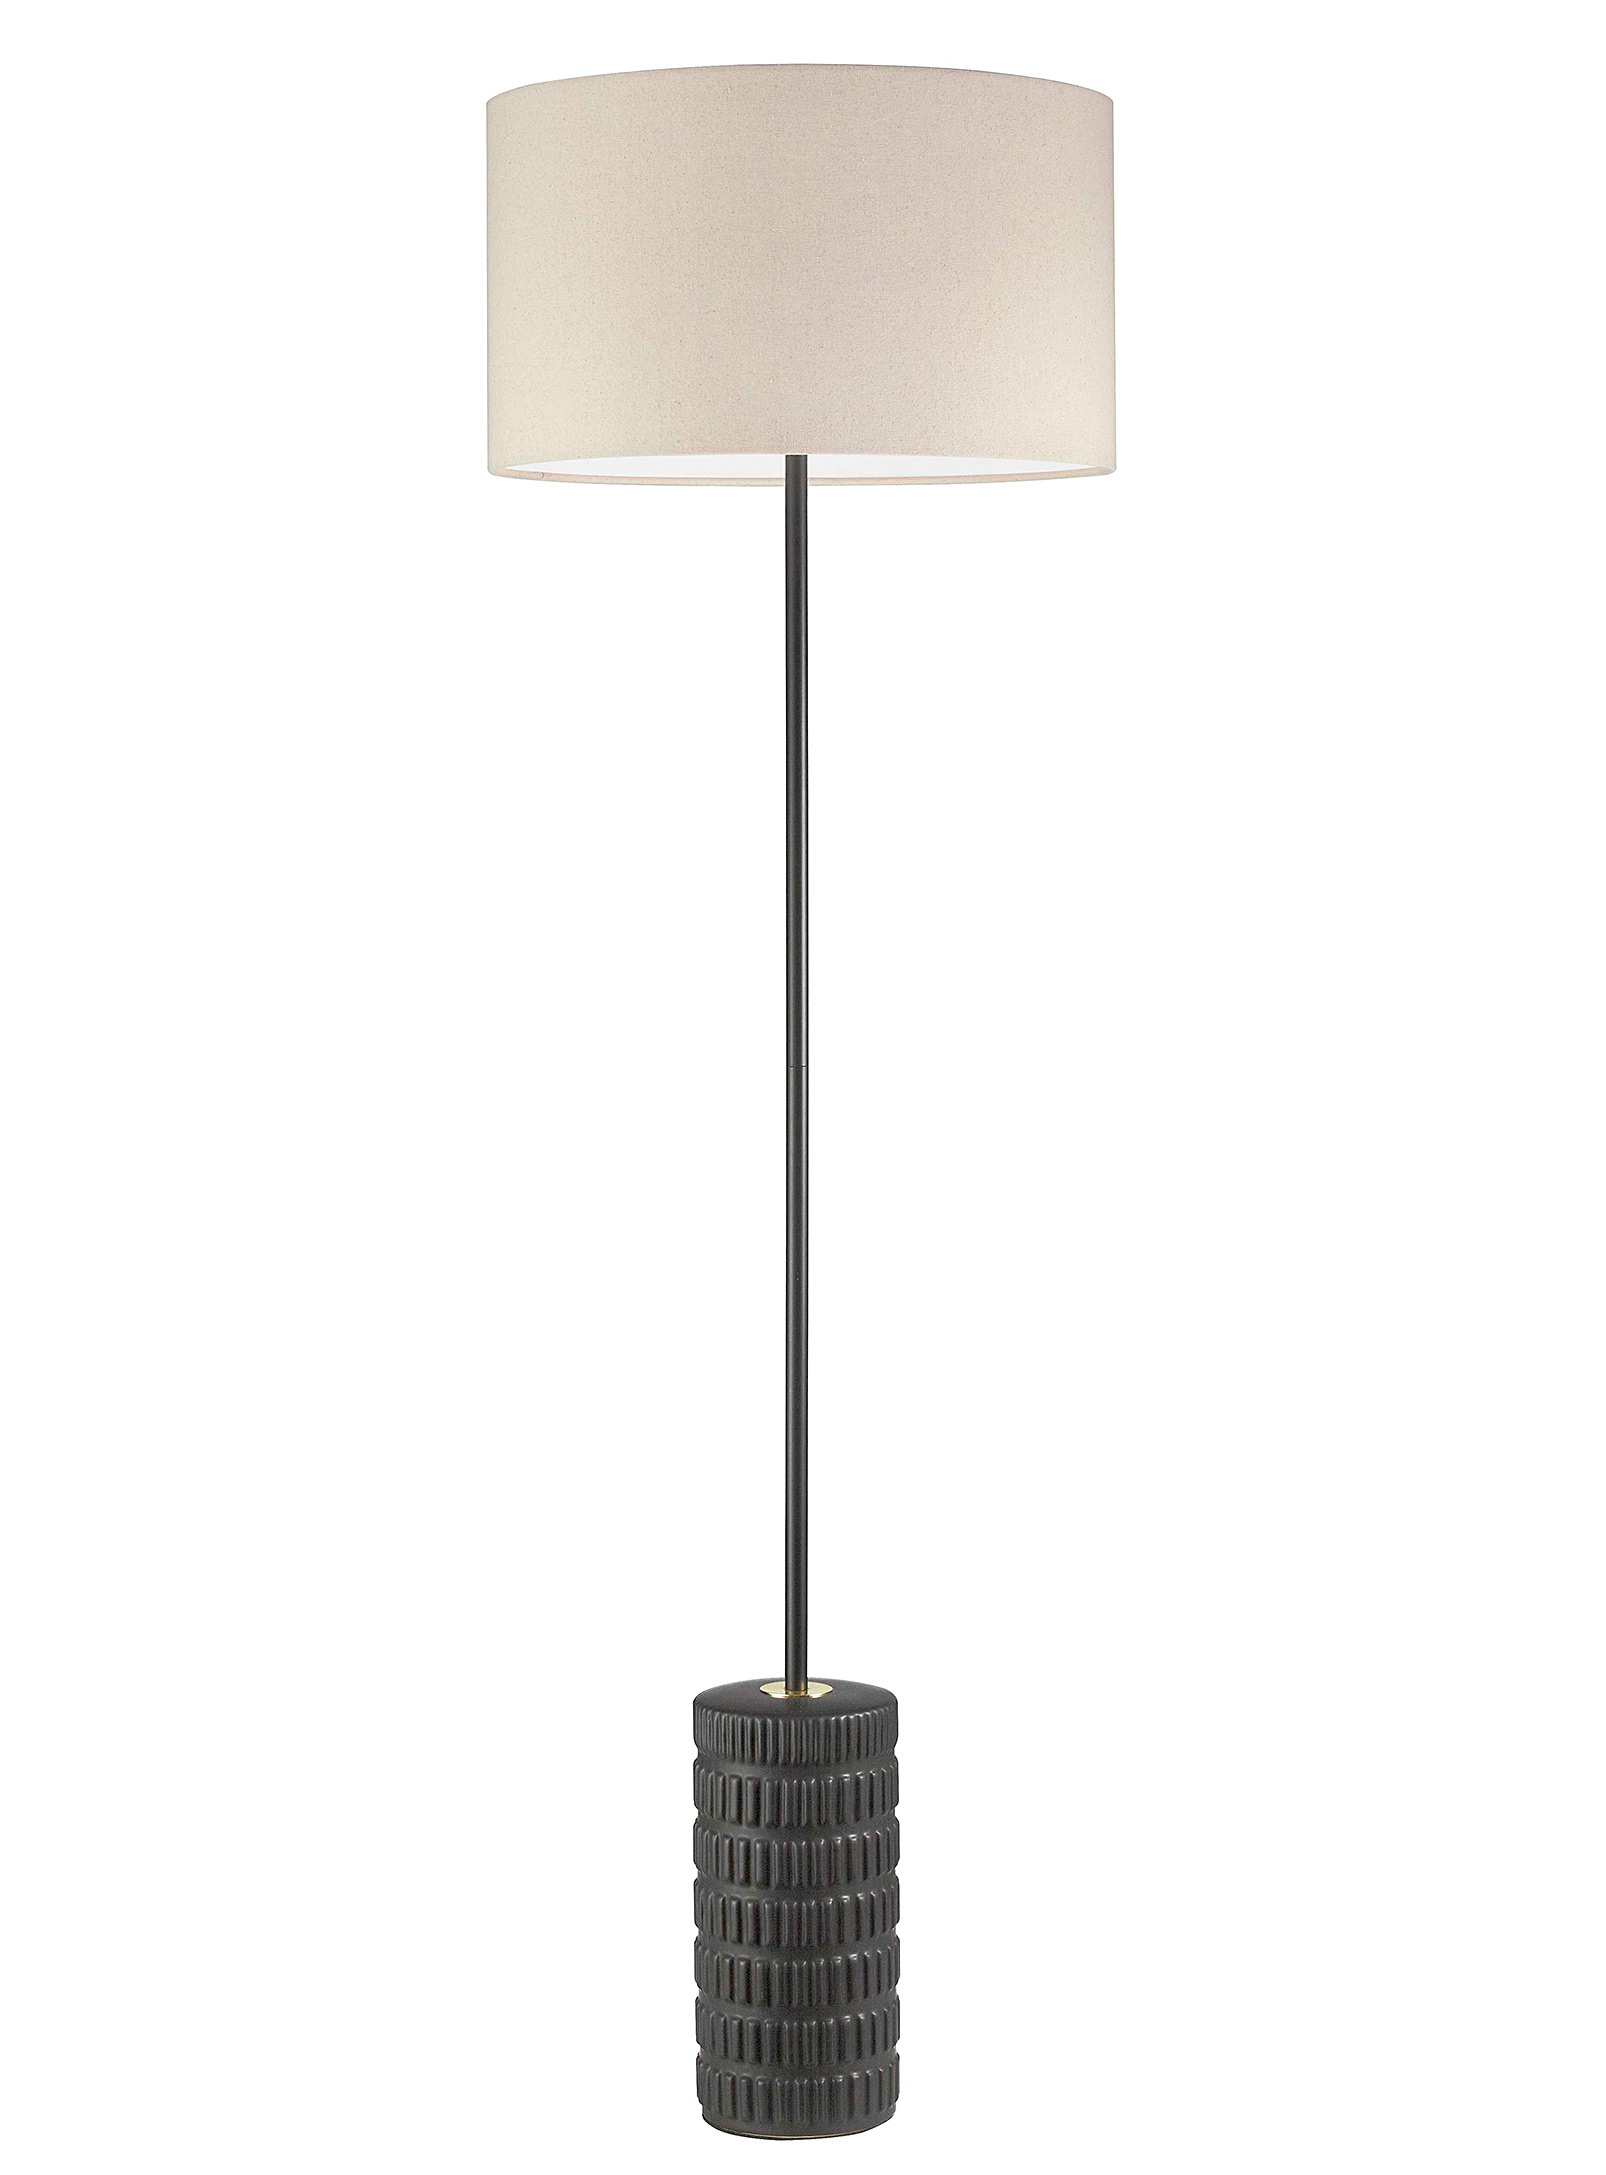 Simons Maison - La lampe sur pied céramique relief ébène